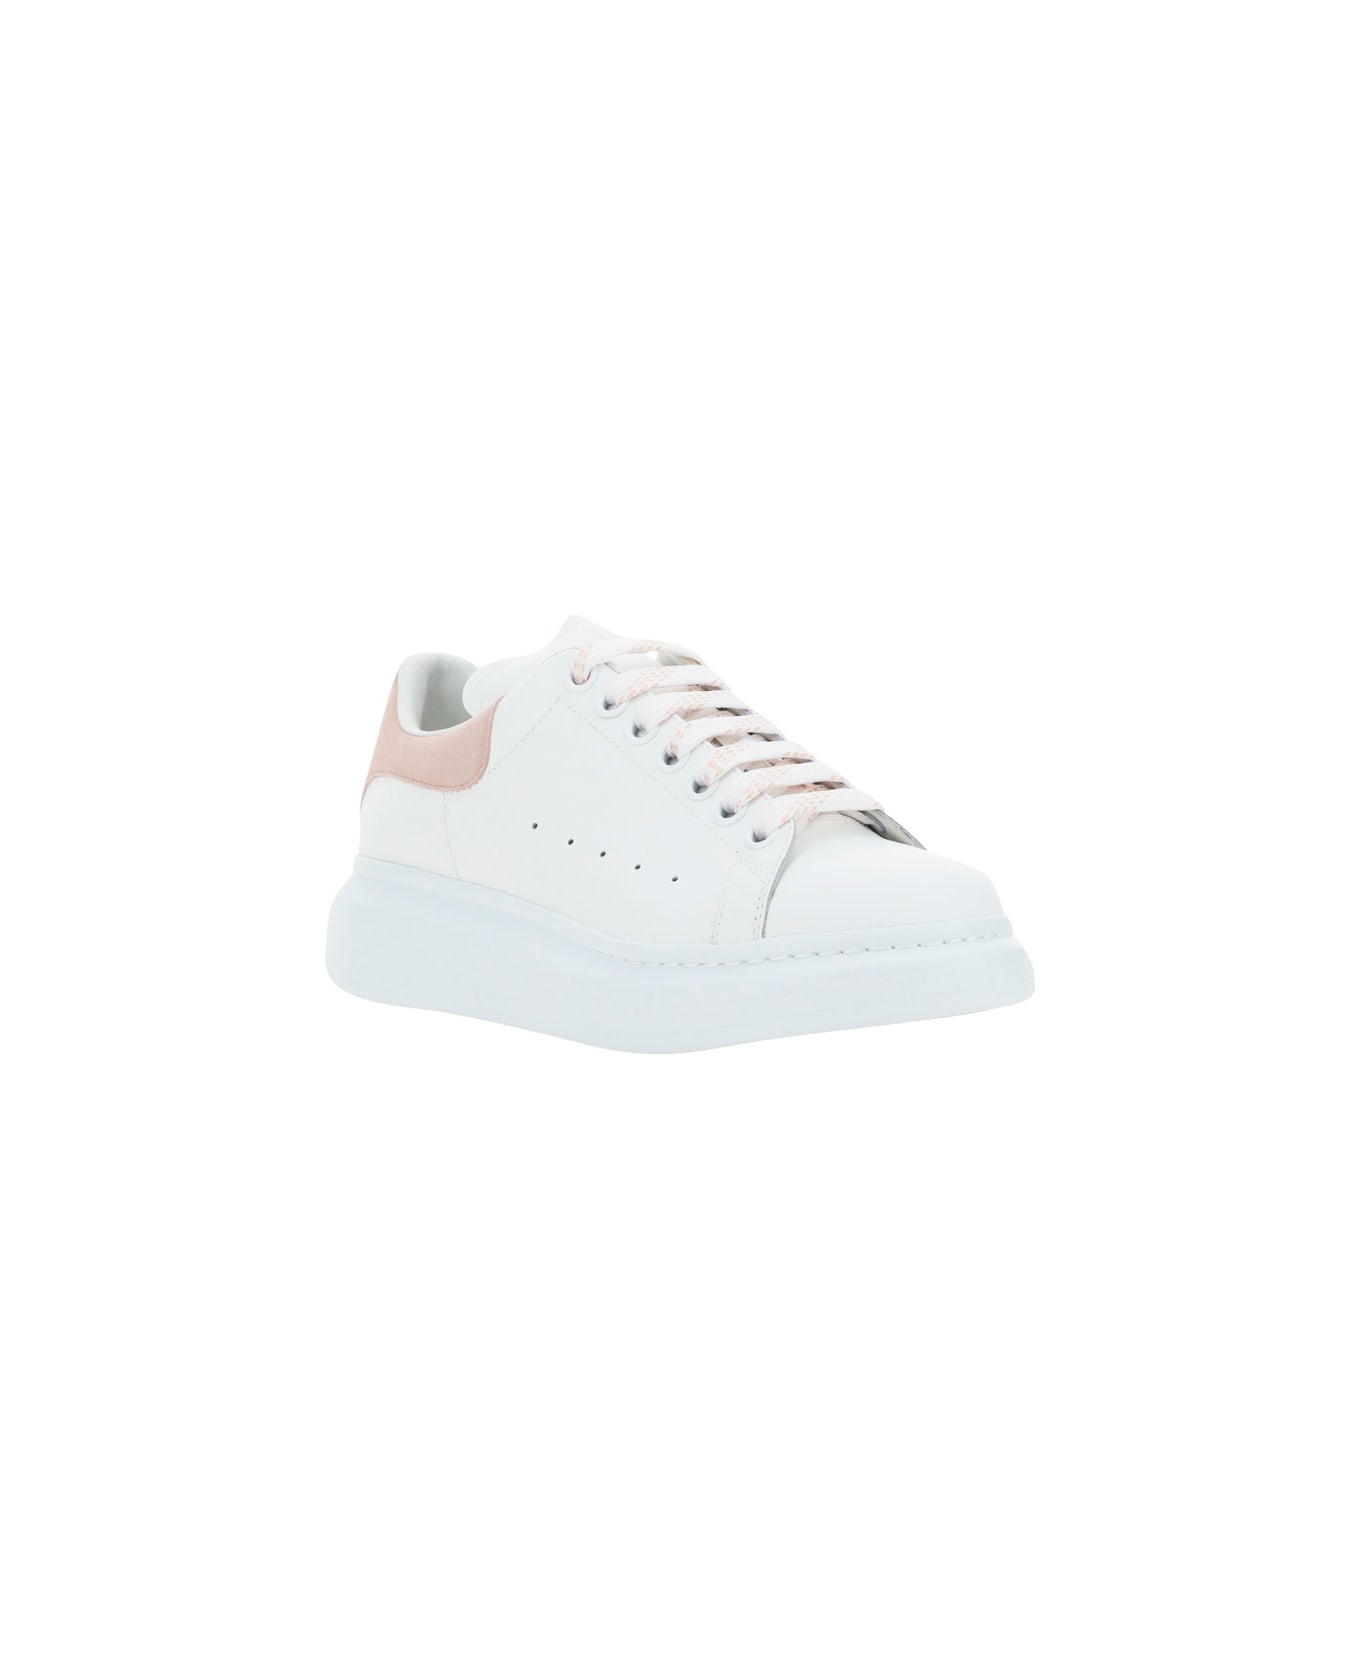 Alexander McQueen Sneakers - White/patchouli